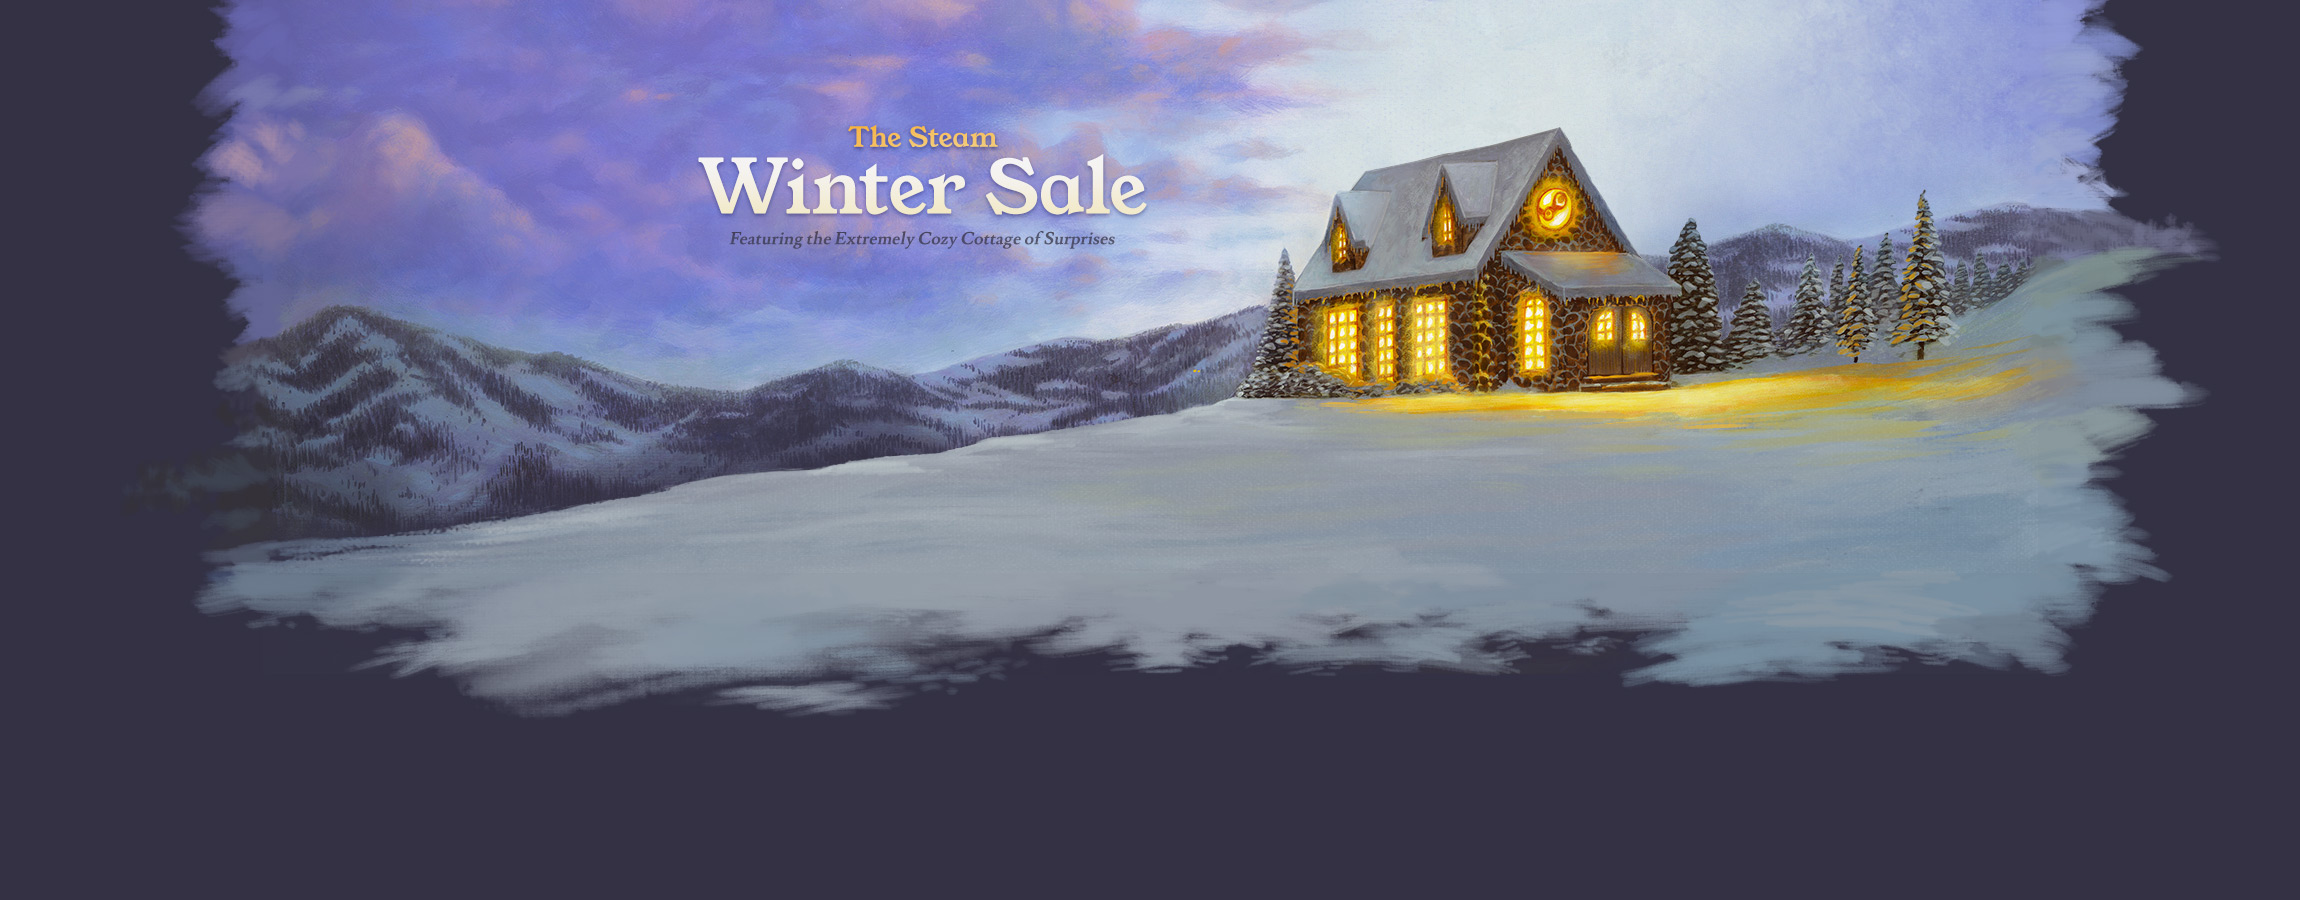 2018 12 20 The Steam Winter Sale Steam Winter Sale Winter Sale Steam Sale